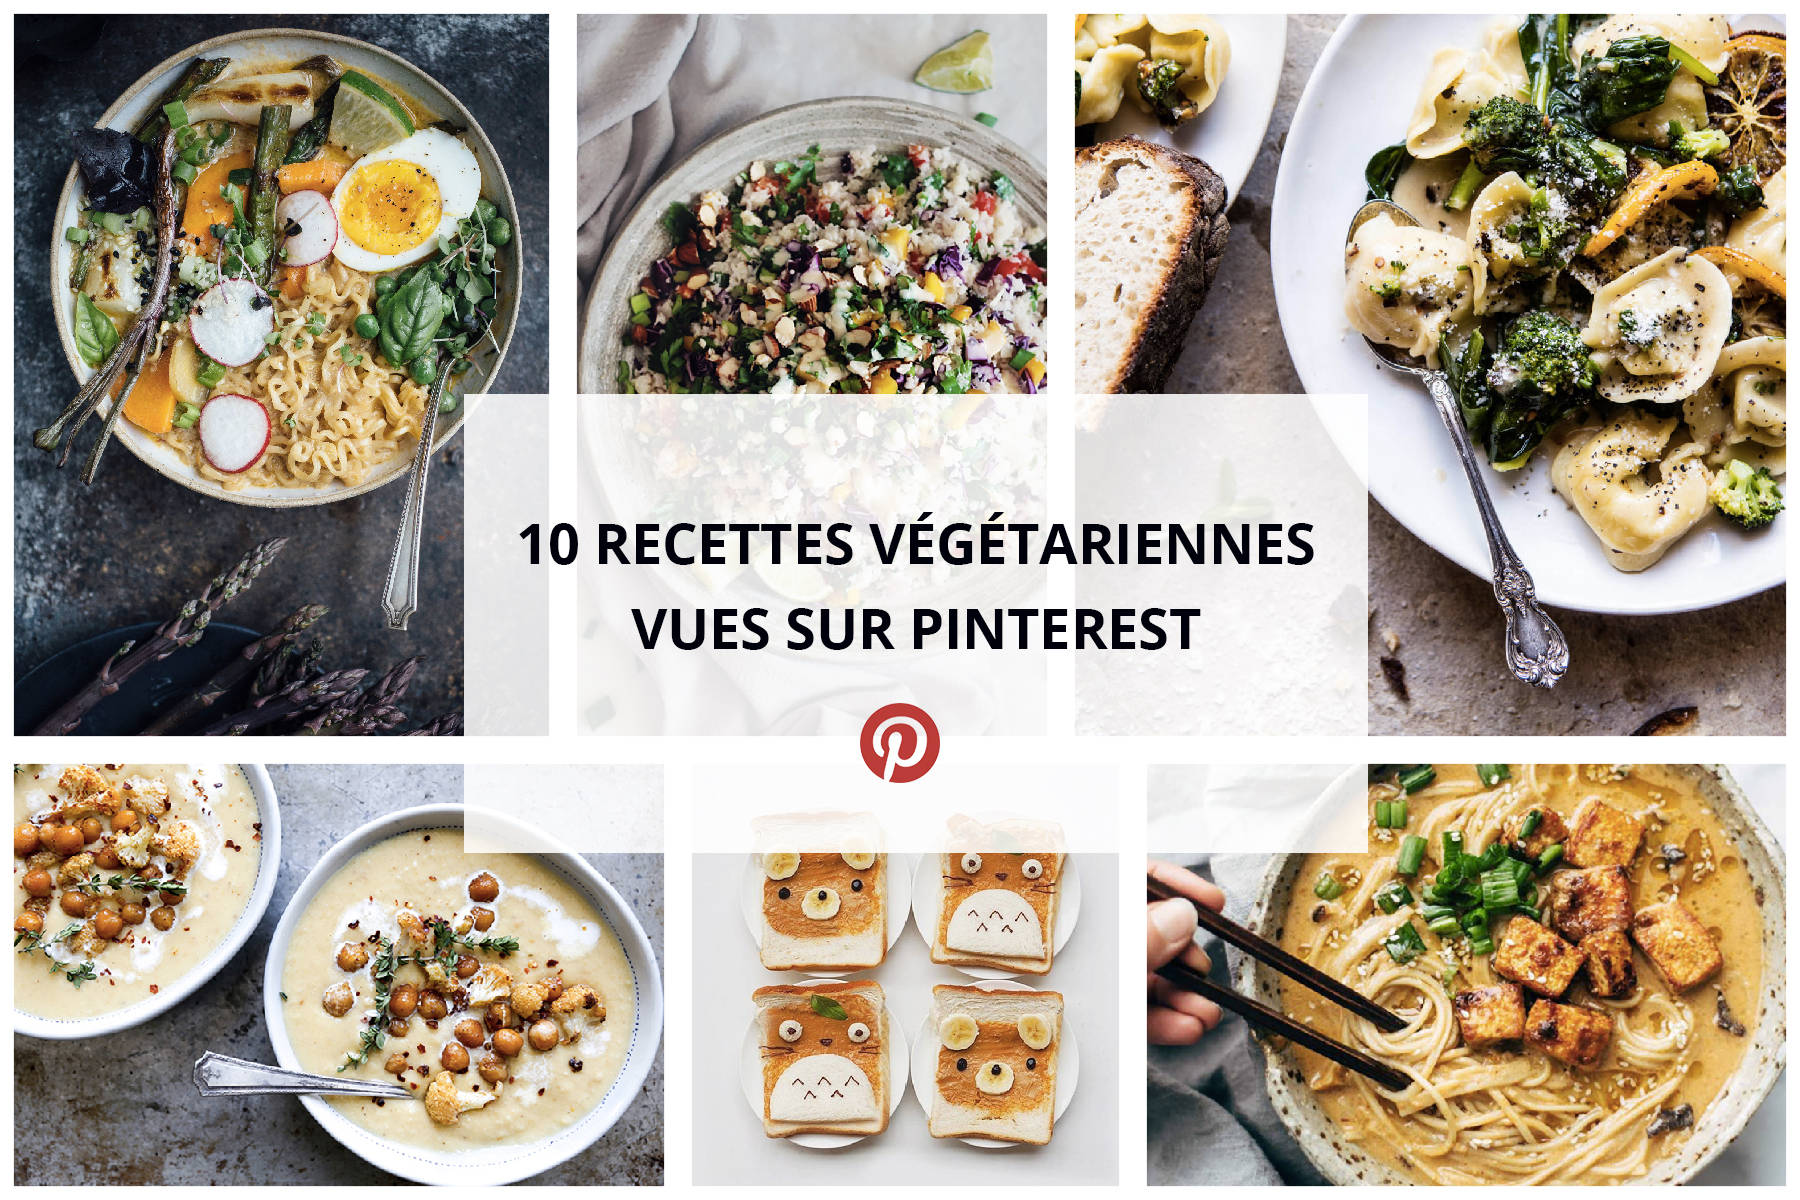 10 recettes végétariennes repérées sur Pinterest